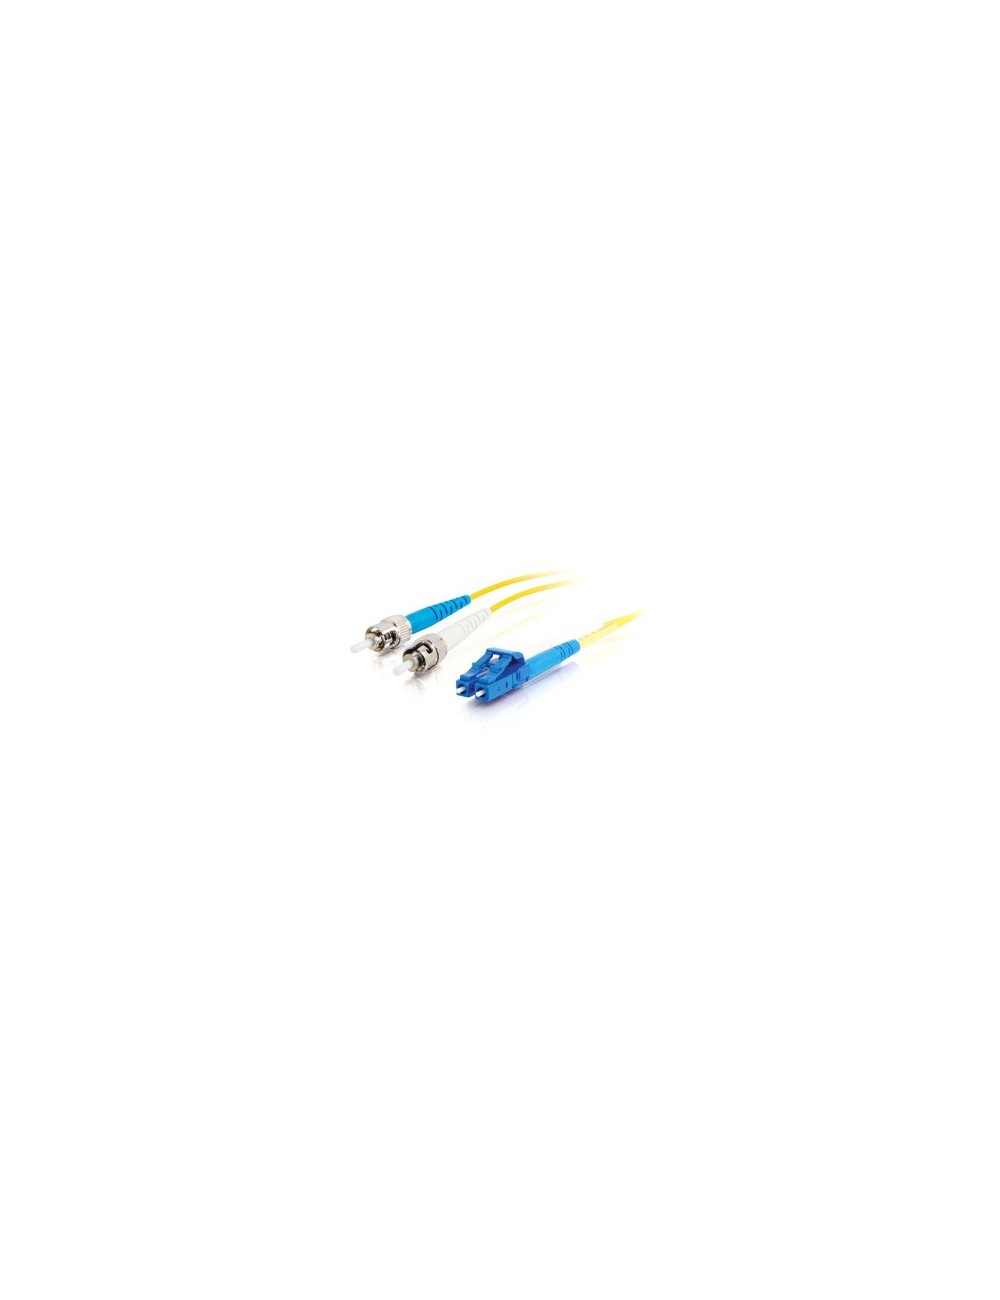 C2G 85542 Cable de fibra óptica e InfiniBand 3 m LC ST OFNR Turquesa